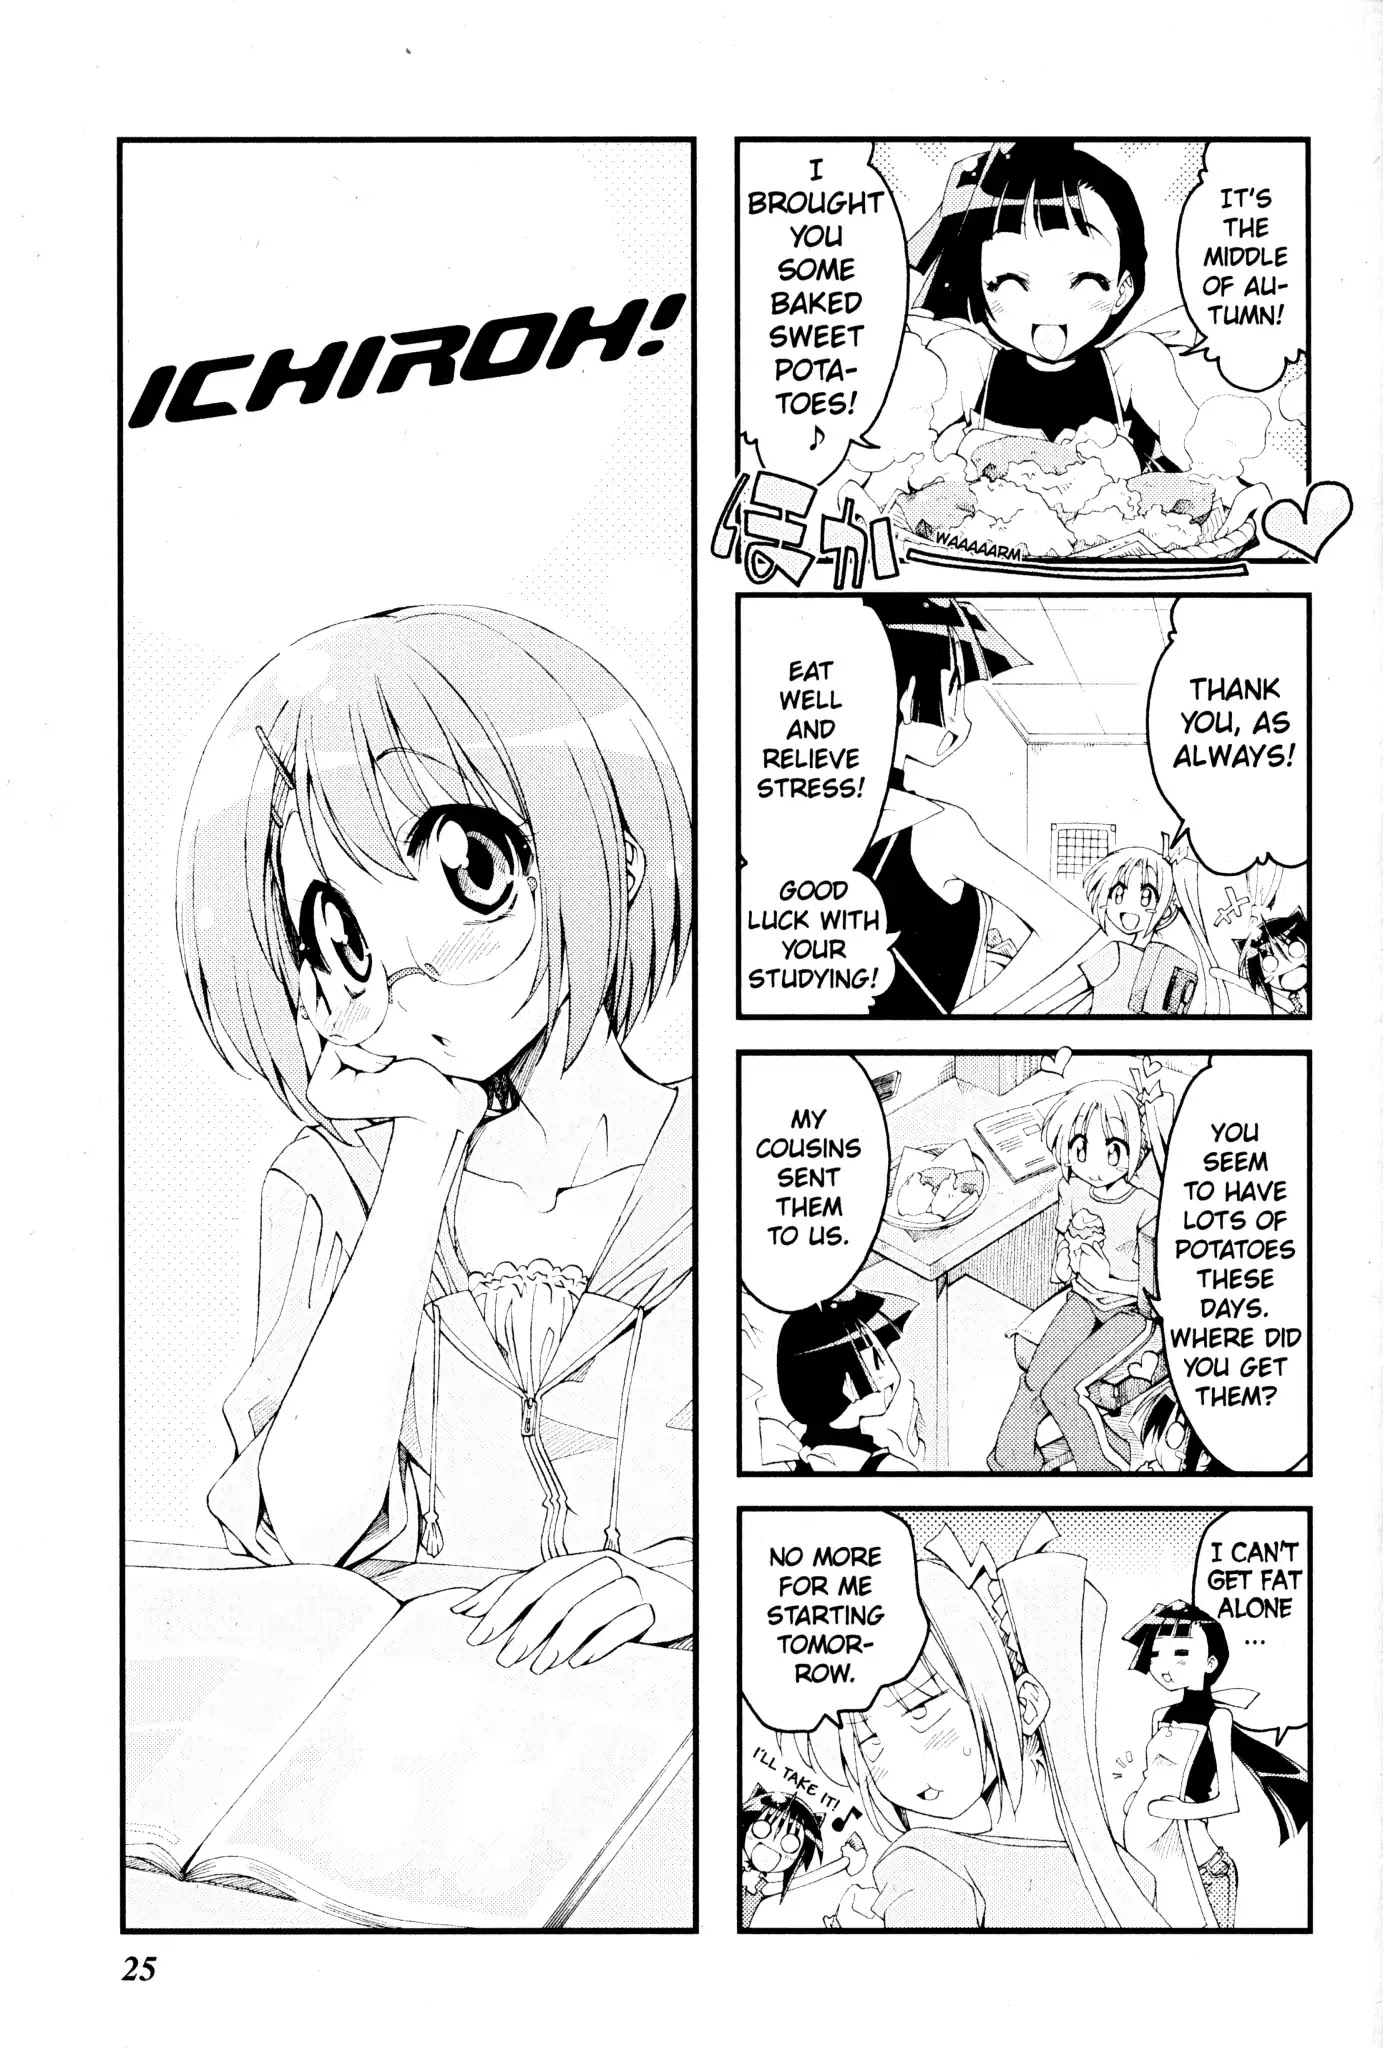 Ichiroh! Chapter 66 #1